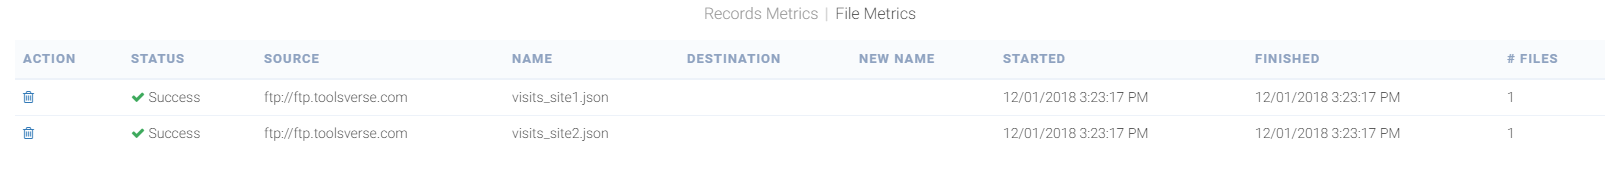 file-metrics.png